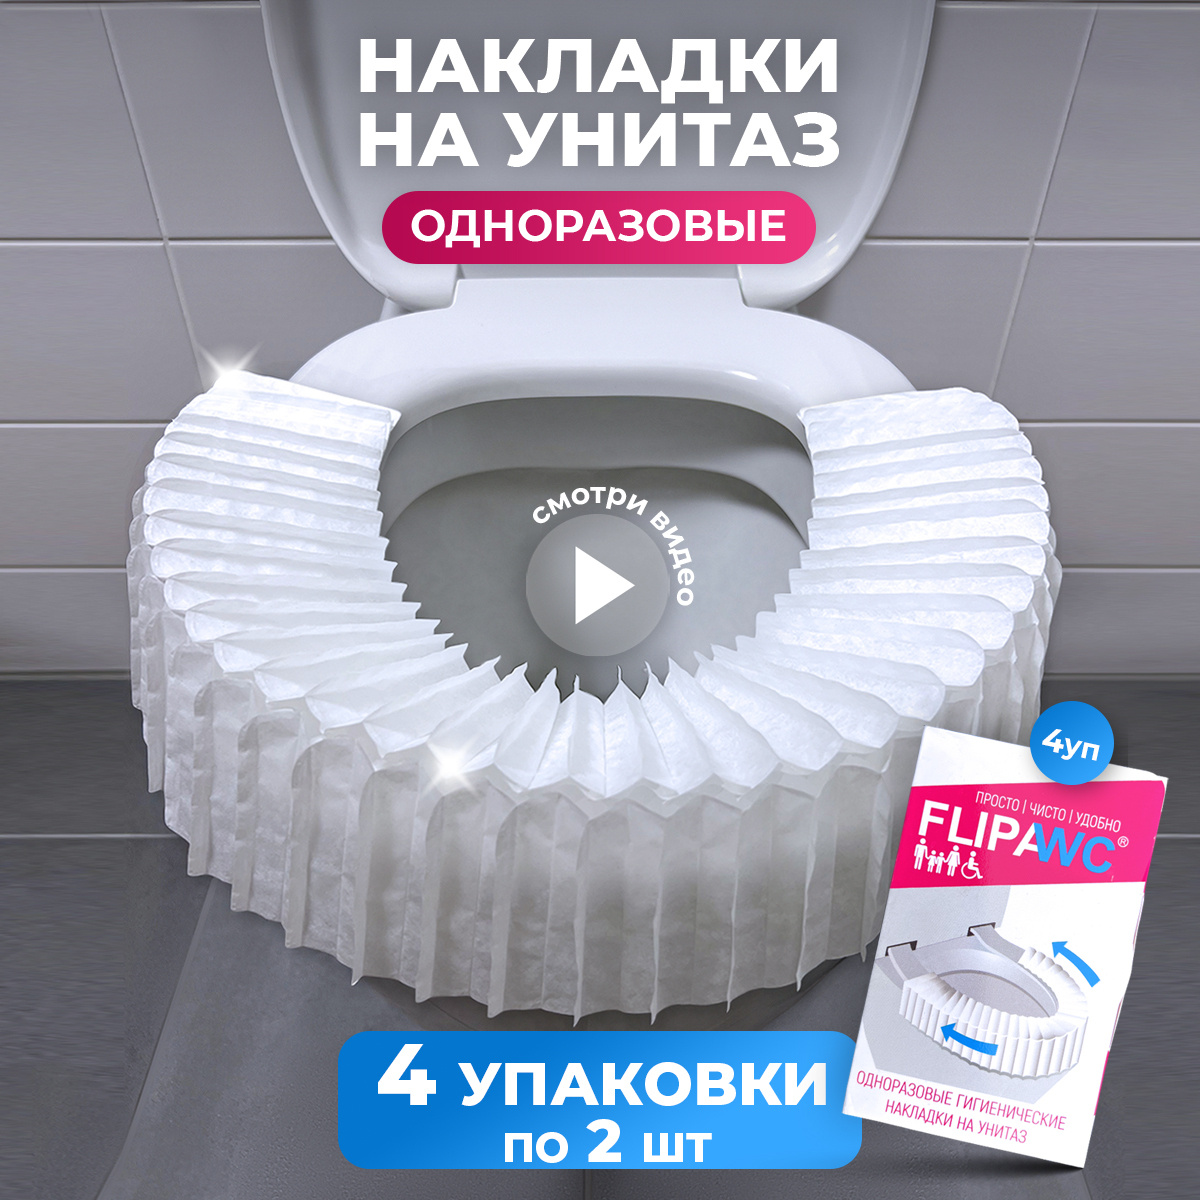 FlipaWC - Универсальная одноразовая гигиеническая раскладная накладка на унитаз. Защитит Вас от бактерий, вирусов при посещении общественных туалетов.